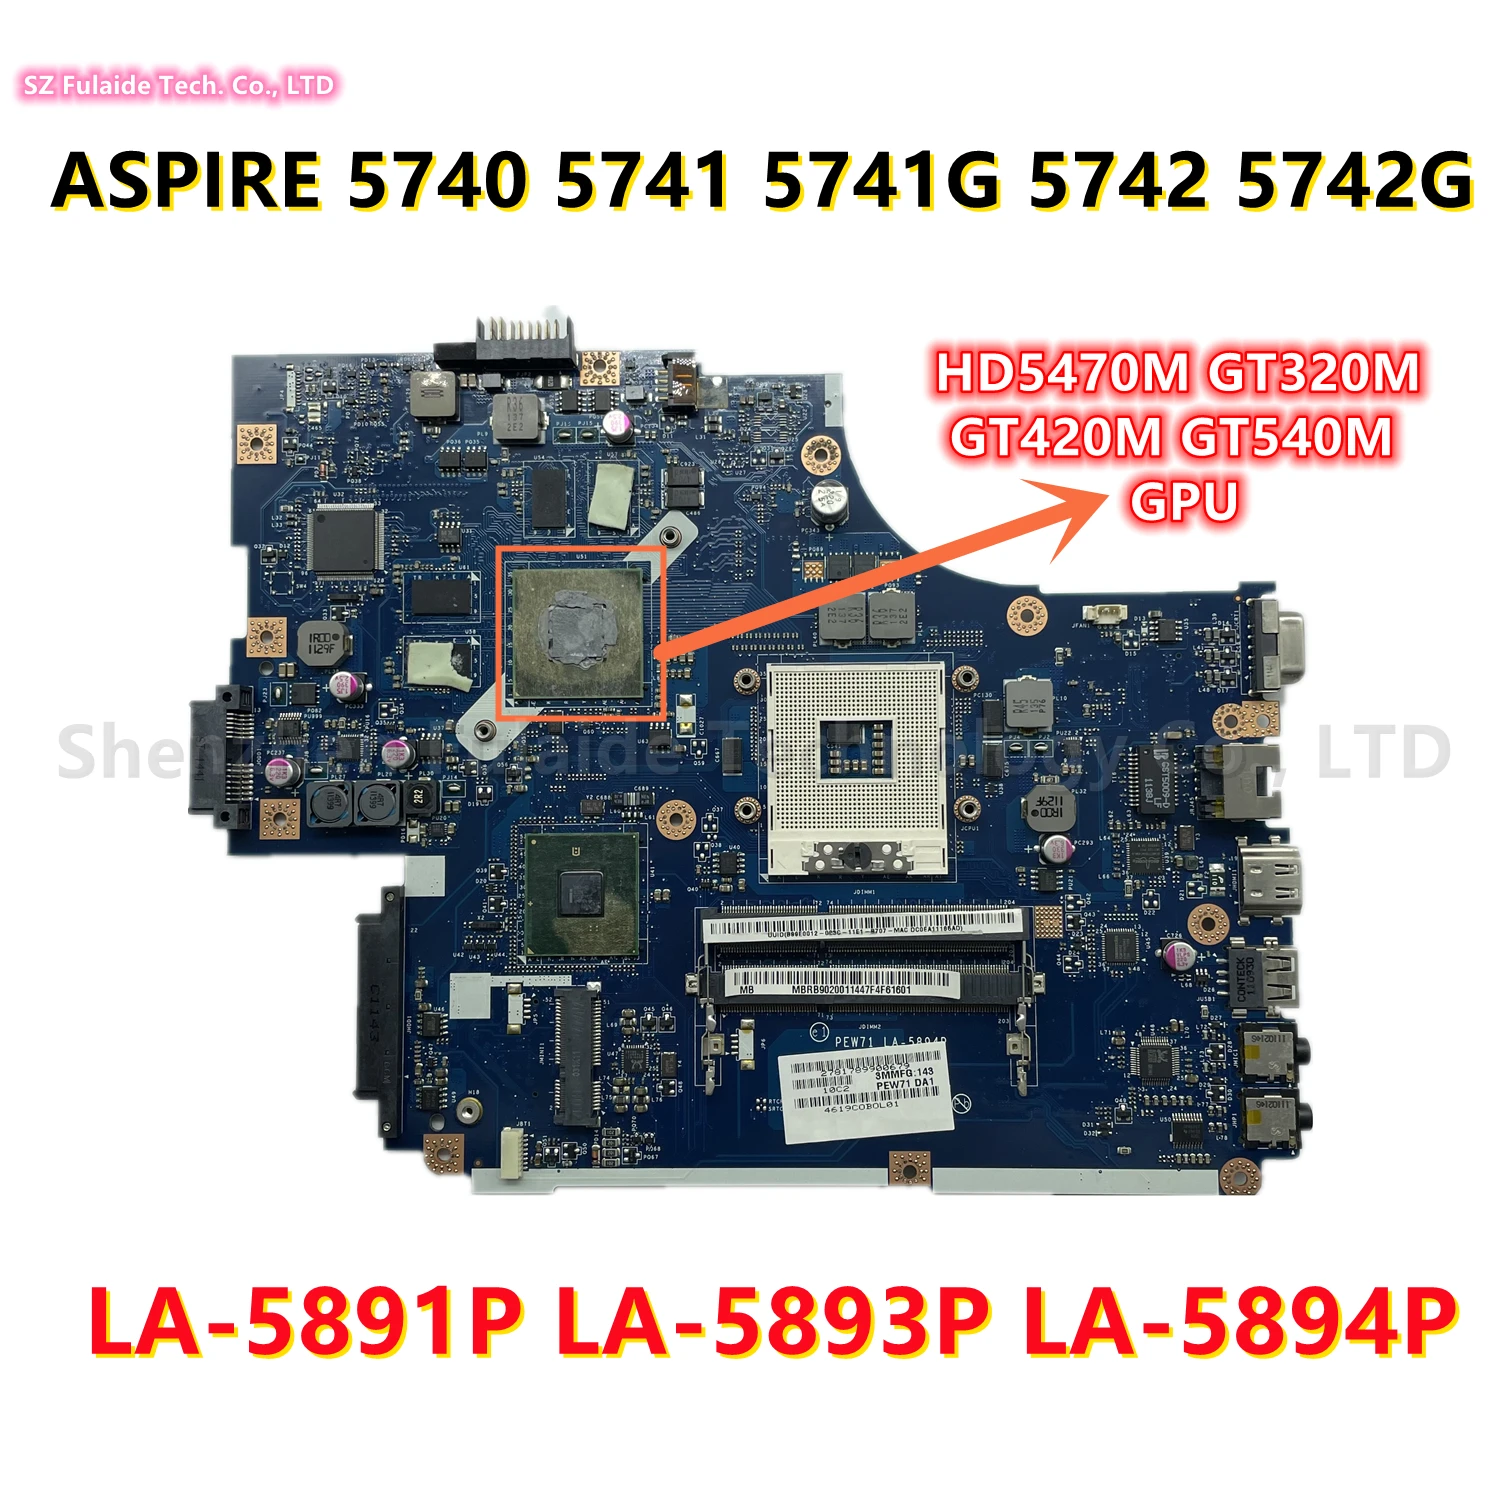 עבור Acer ASPIRE 5740 5741 5741G 5742 5742G מחשב נייד לוח אם עם HD5470M GT320M GT420M GT540M NEW70 לה-5891P לה-5893P לה-5894P